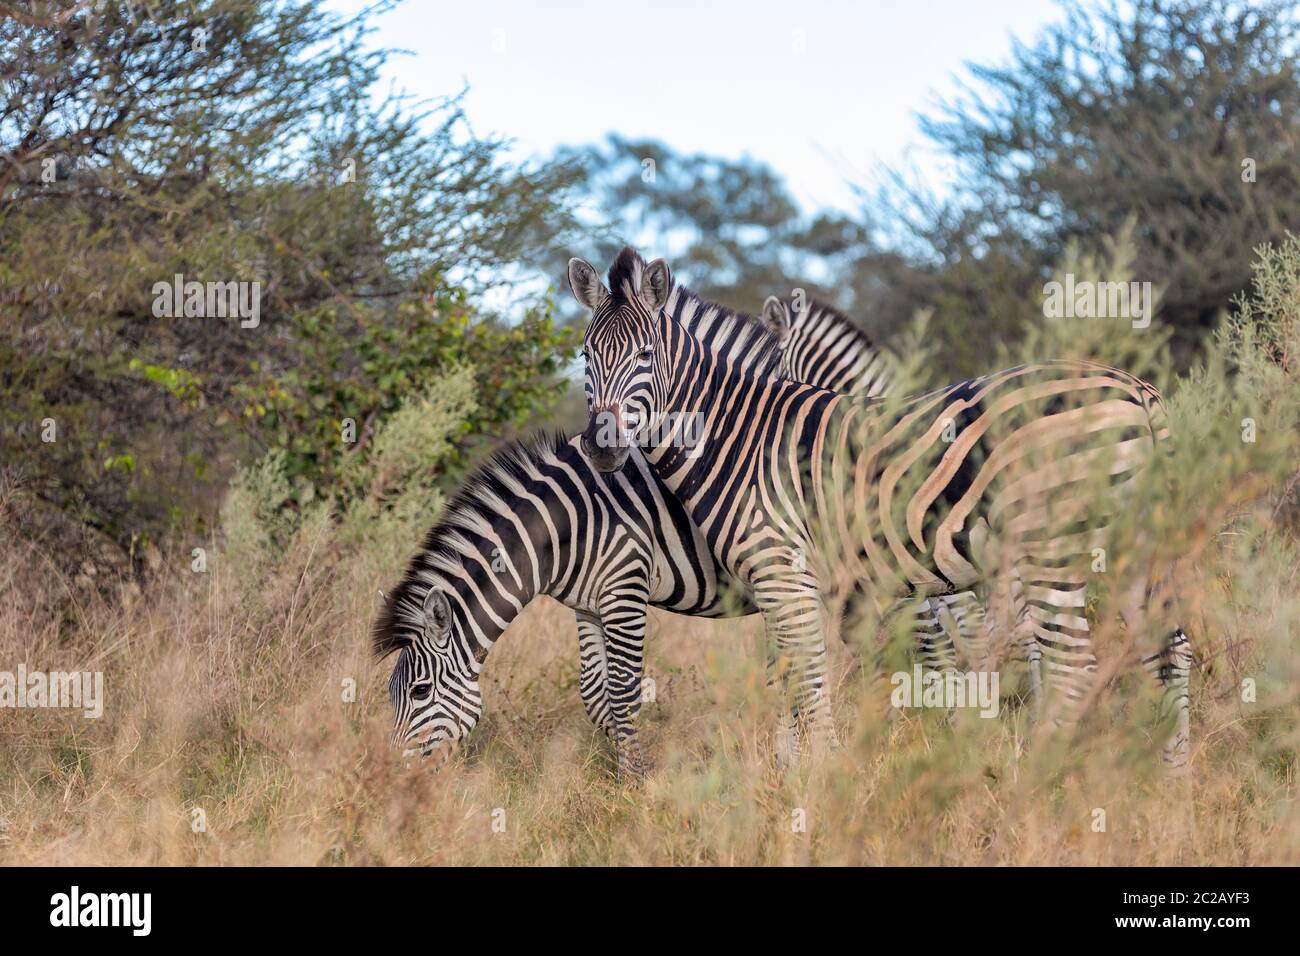 Schöne abgestreift Zebra Kopf im afrikanischen Busch. Khama Rhino Sanctuary Reservierung, Botswana Safari Wildlife. Wildes Tier in der Natur Lebensraum. Dies ist Stockfoto